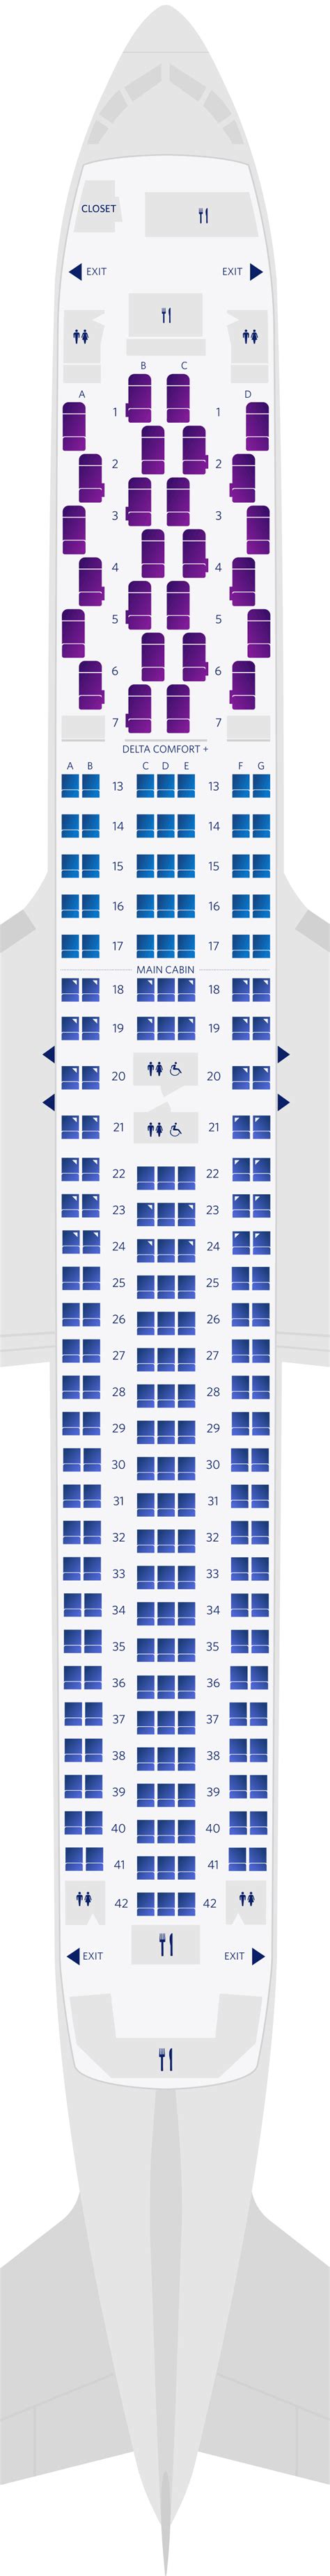 Seat Map Of Boeing Er Seat Map In Flight Travel Sexiz Pix